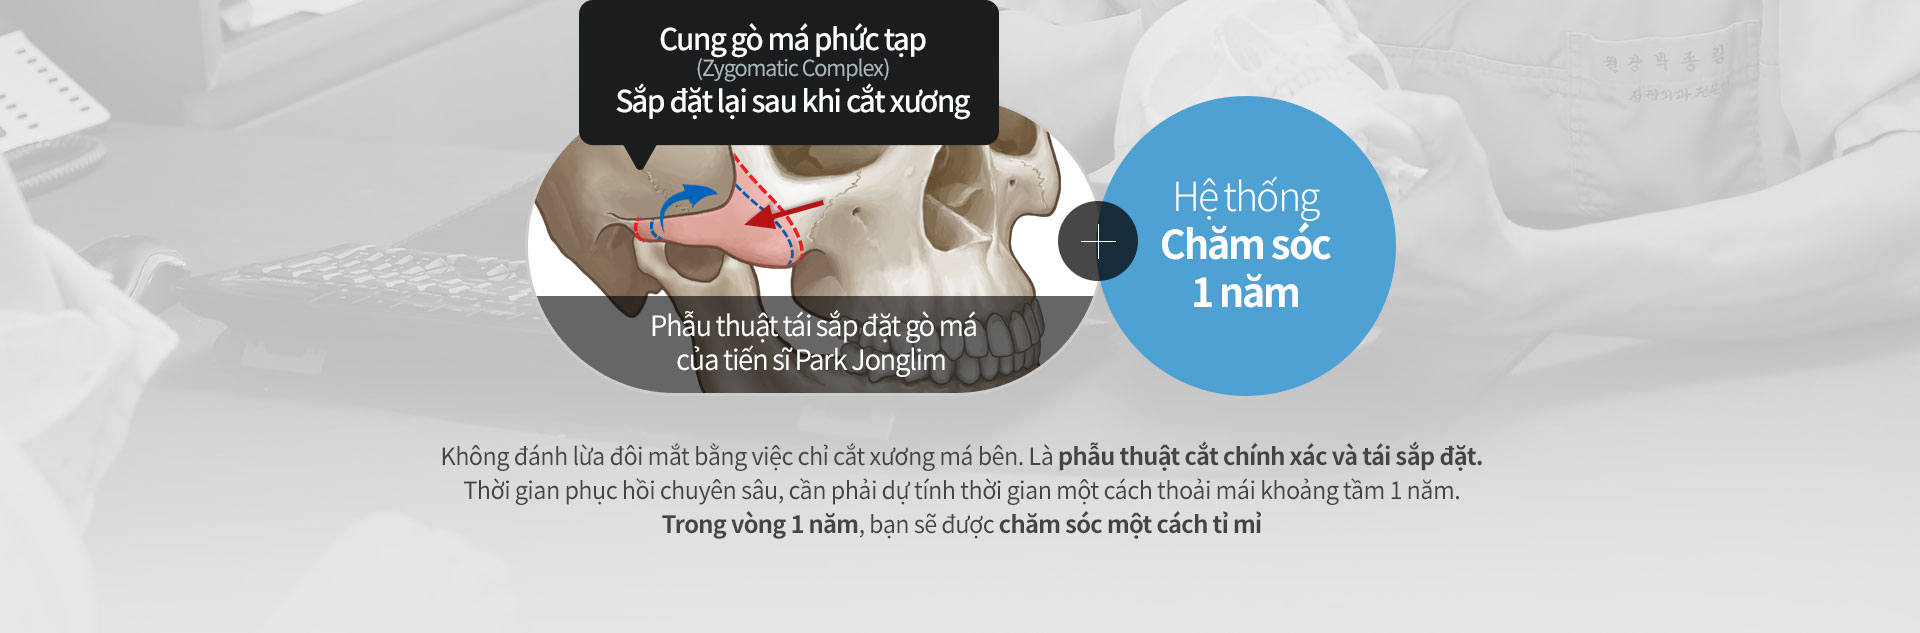 Phẫu thuật tái sắp đặt gò má của tiến sĩ Park Jonglim + Hệ thống Chăm sóc 1 năm